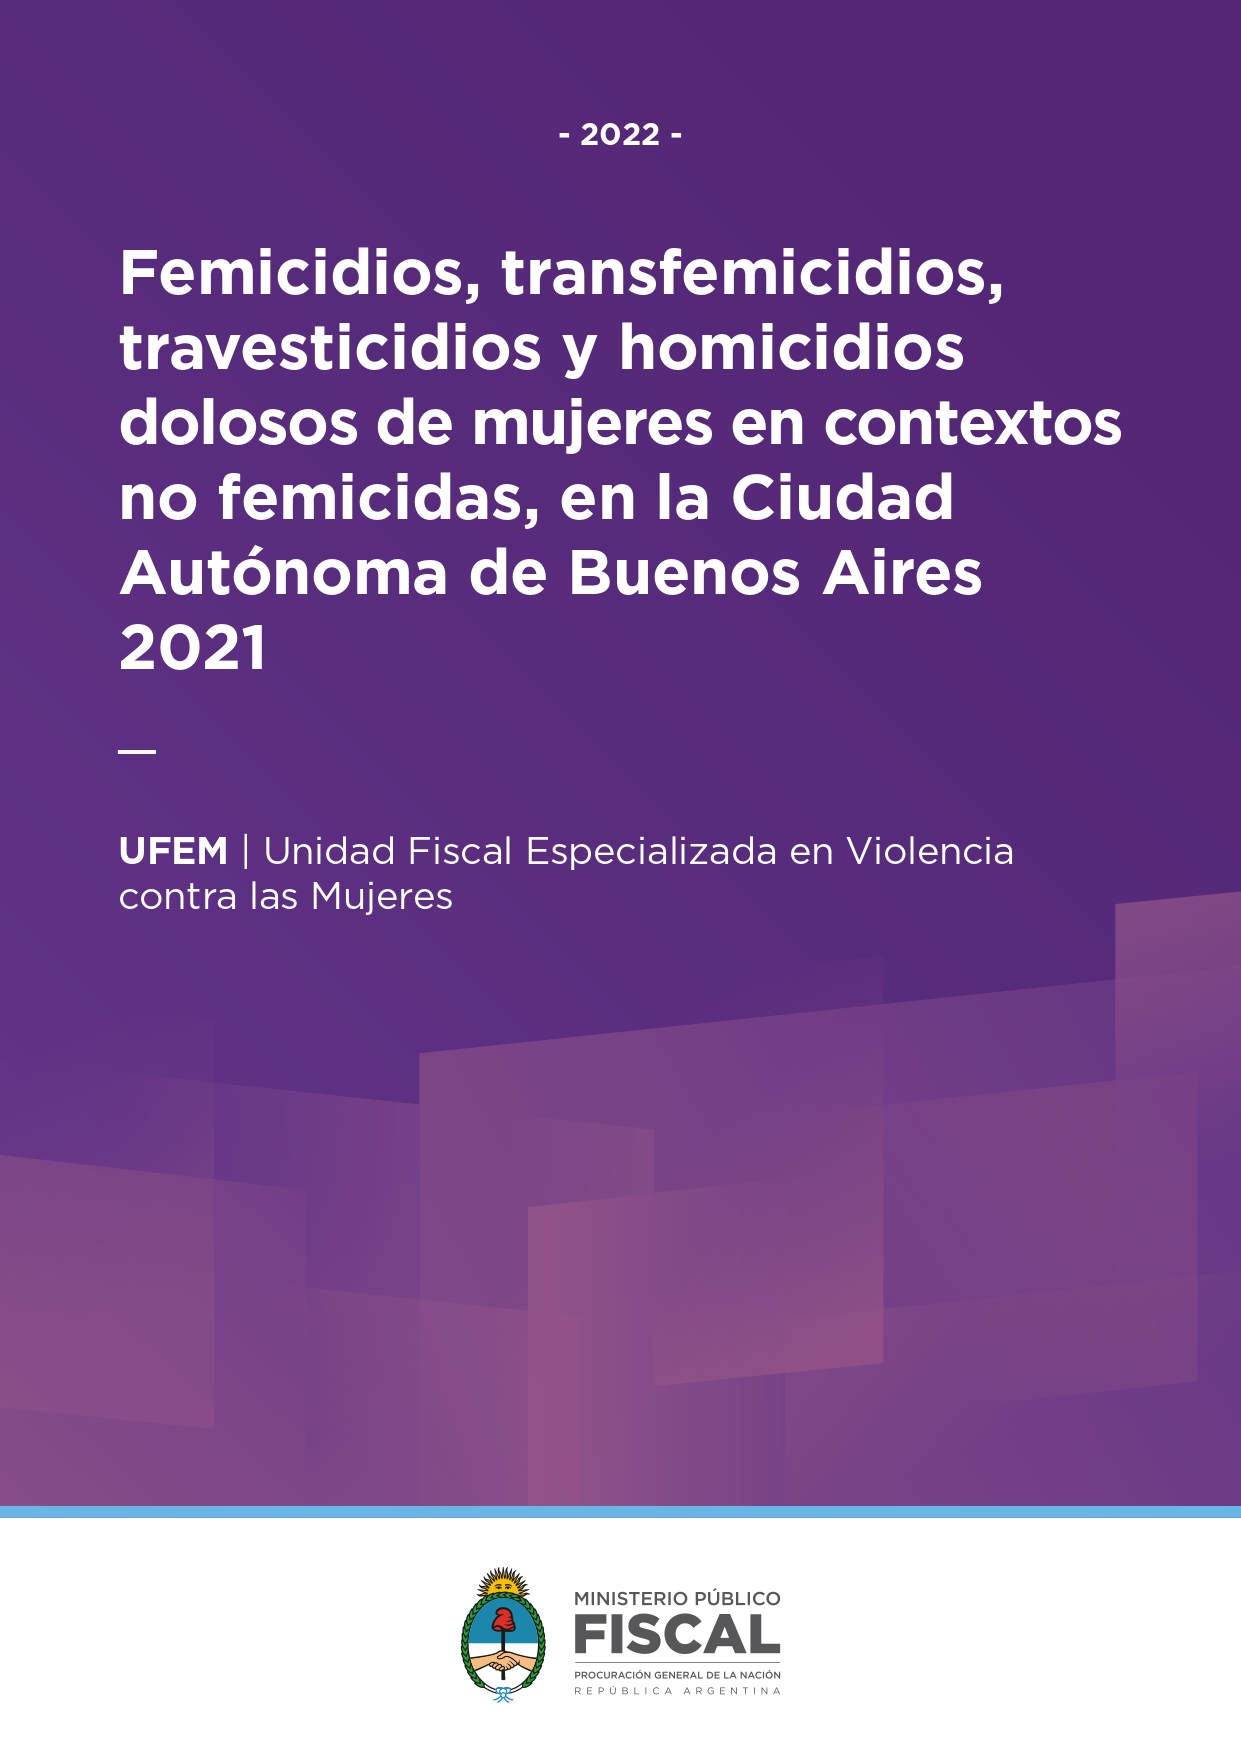 Femicidios, transfemicidios, travesticidios y homicidios dolosos de mujeres en contextos no femicidas, en la Ciudad Autónoma de Buenos Aires 2021